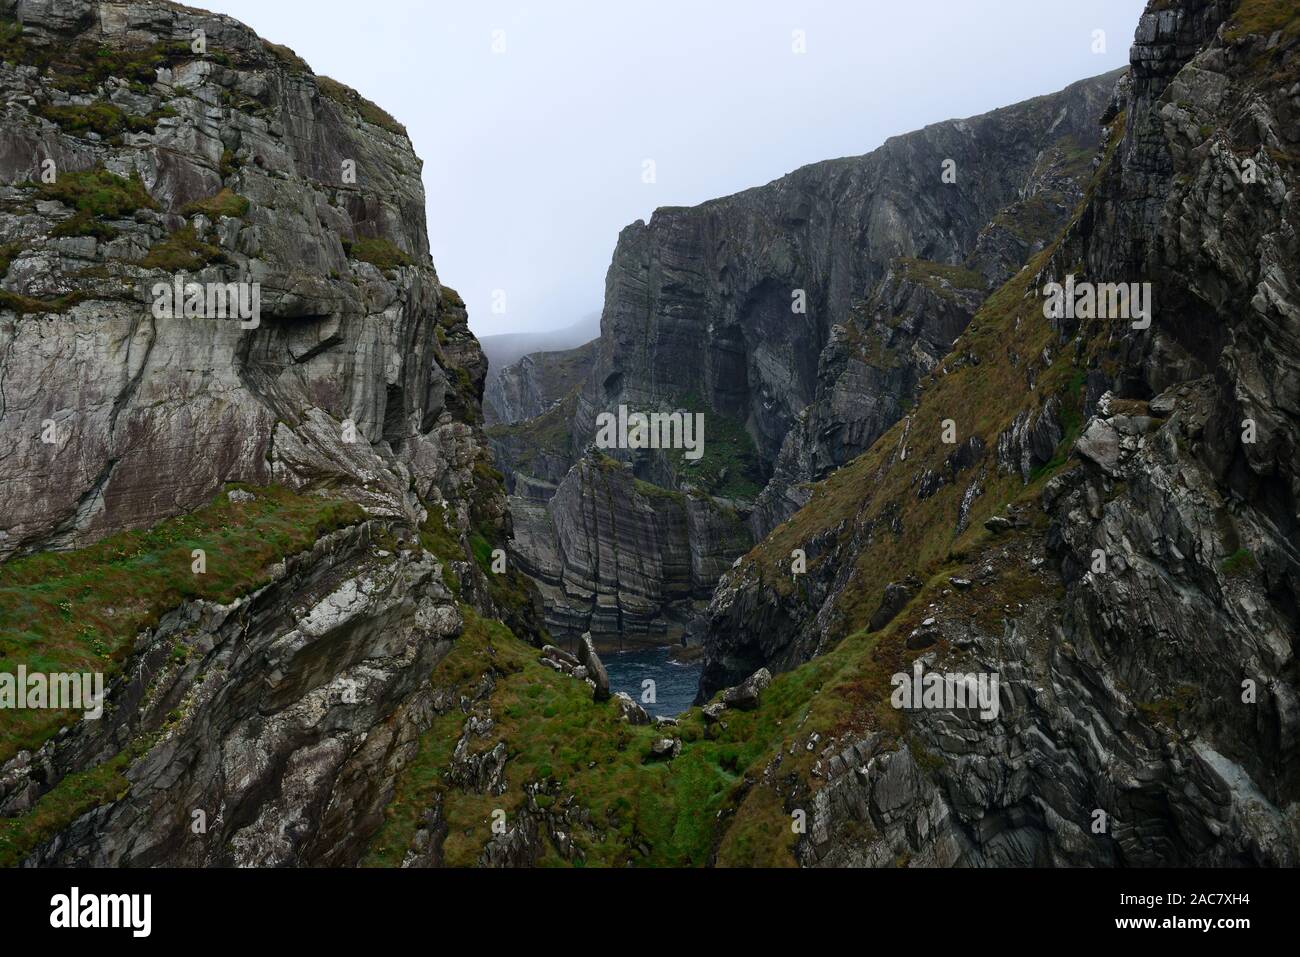 Klippen, Mizen Head, südwestlichsten Punkt von Irland, Nebel, Nieselregen, schlechtes Wetter, wilden Atlantik weg, touristische Attraktion, RM Irland Stockfoto